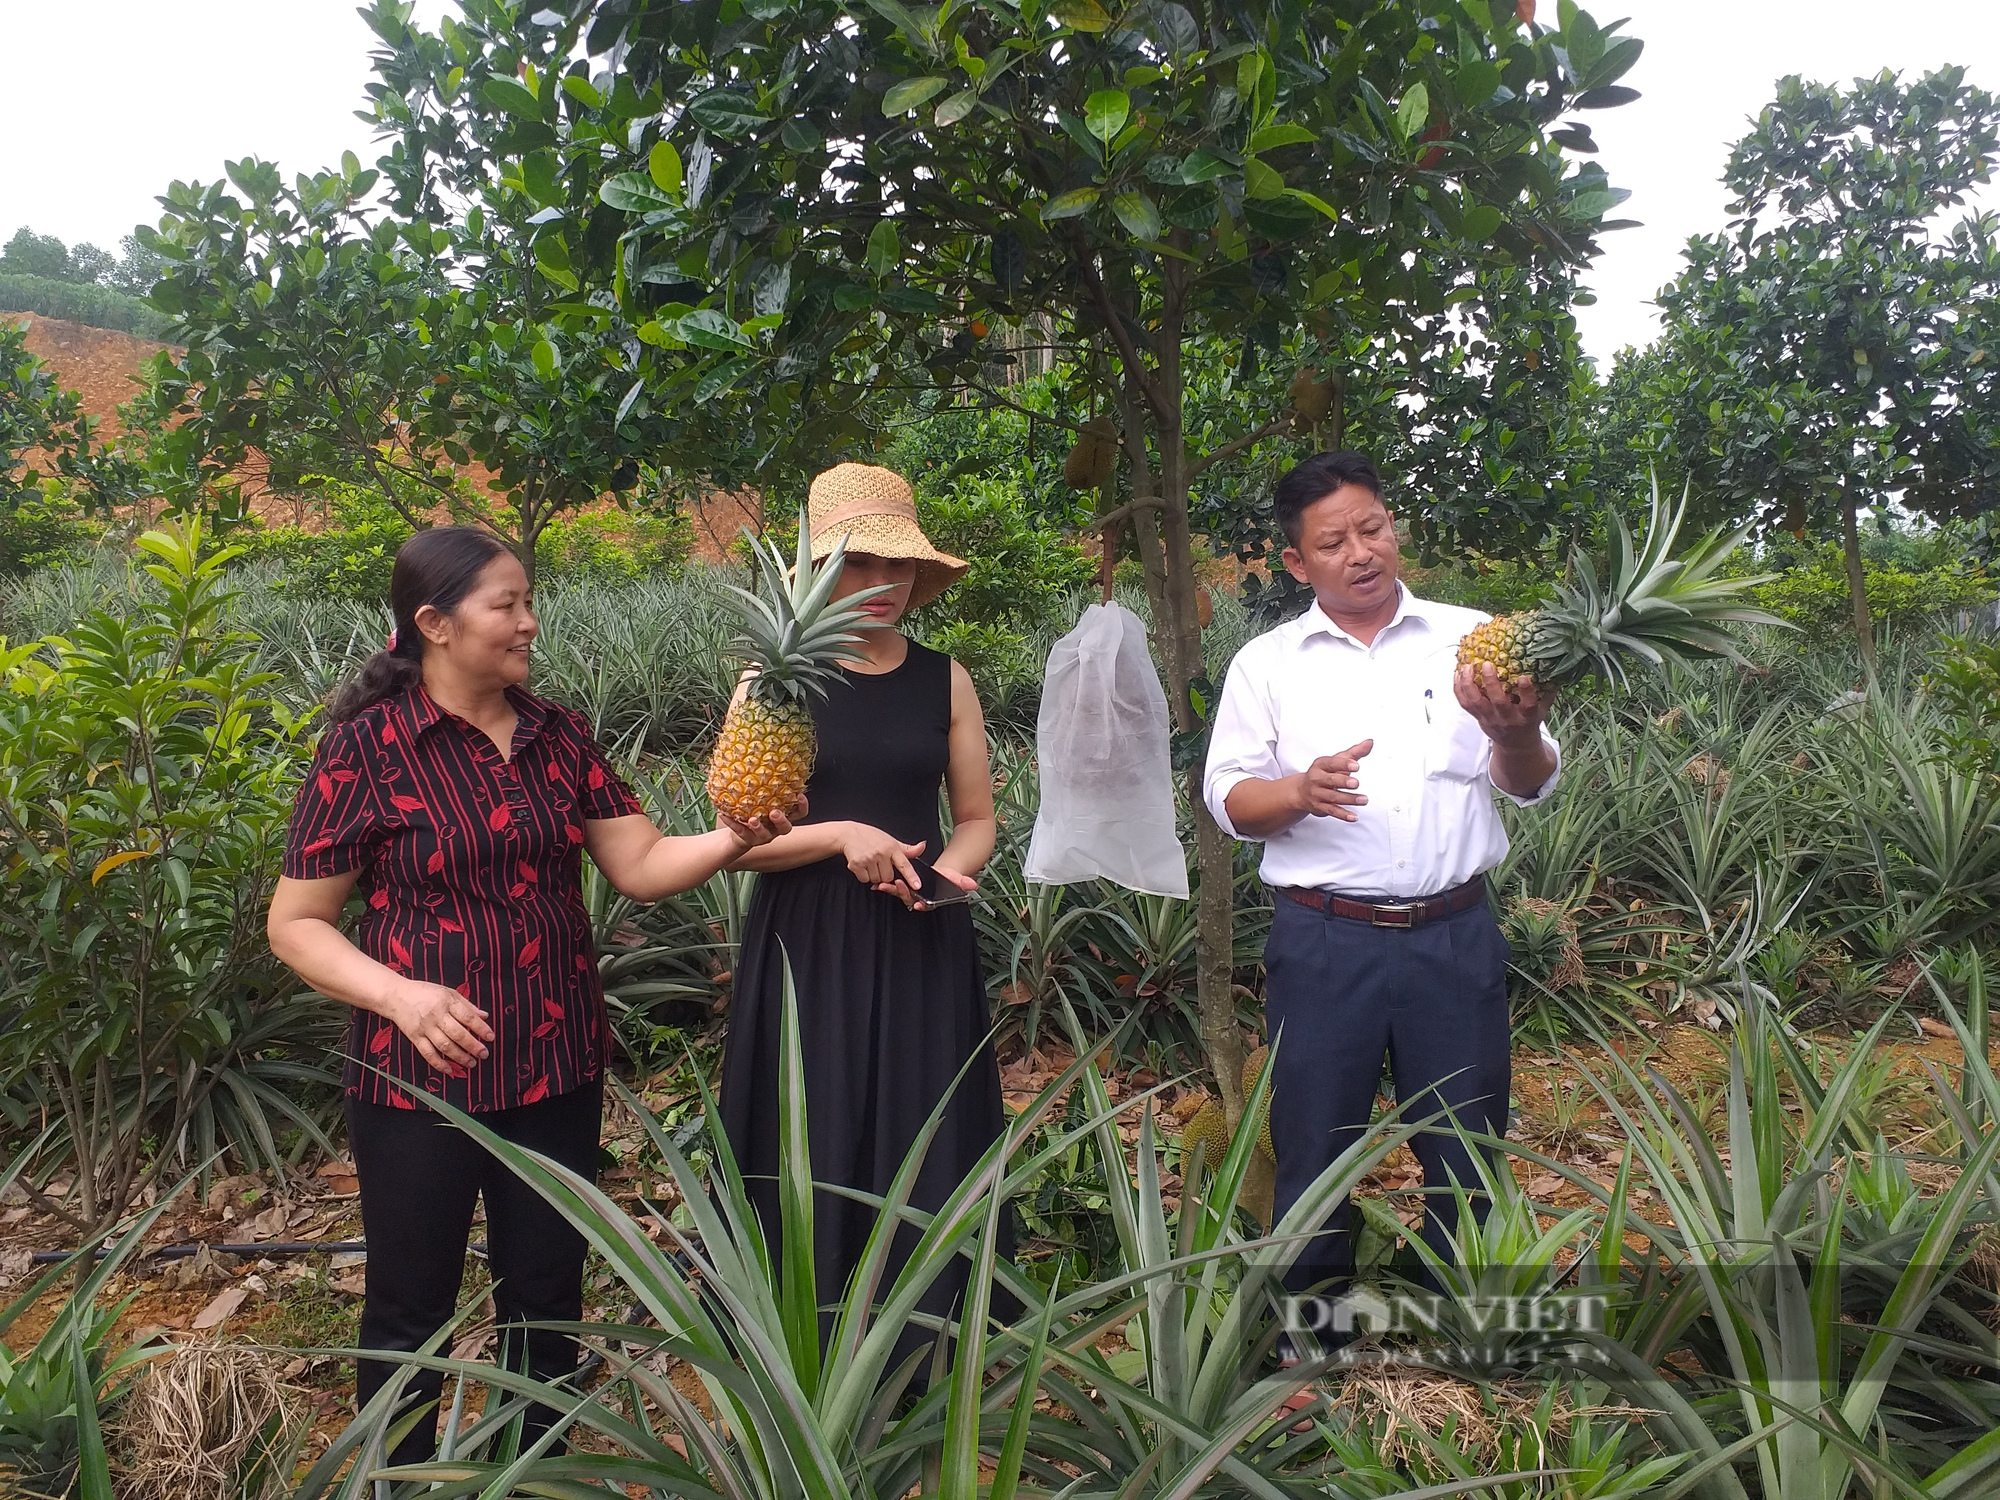 Hơn 4 tỉ đồng hỗ trợ 13 hợp tác xã, 300 nông dân huyện miền núi Phú Thọ phát triển nông nghiệp - Ảnh 3.